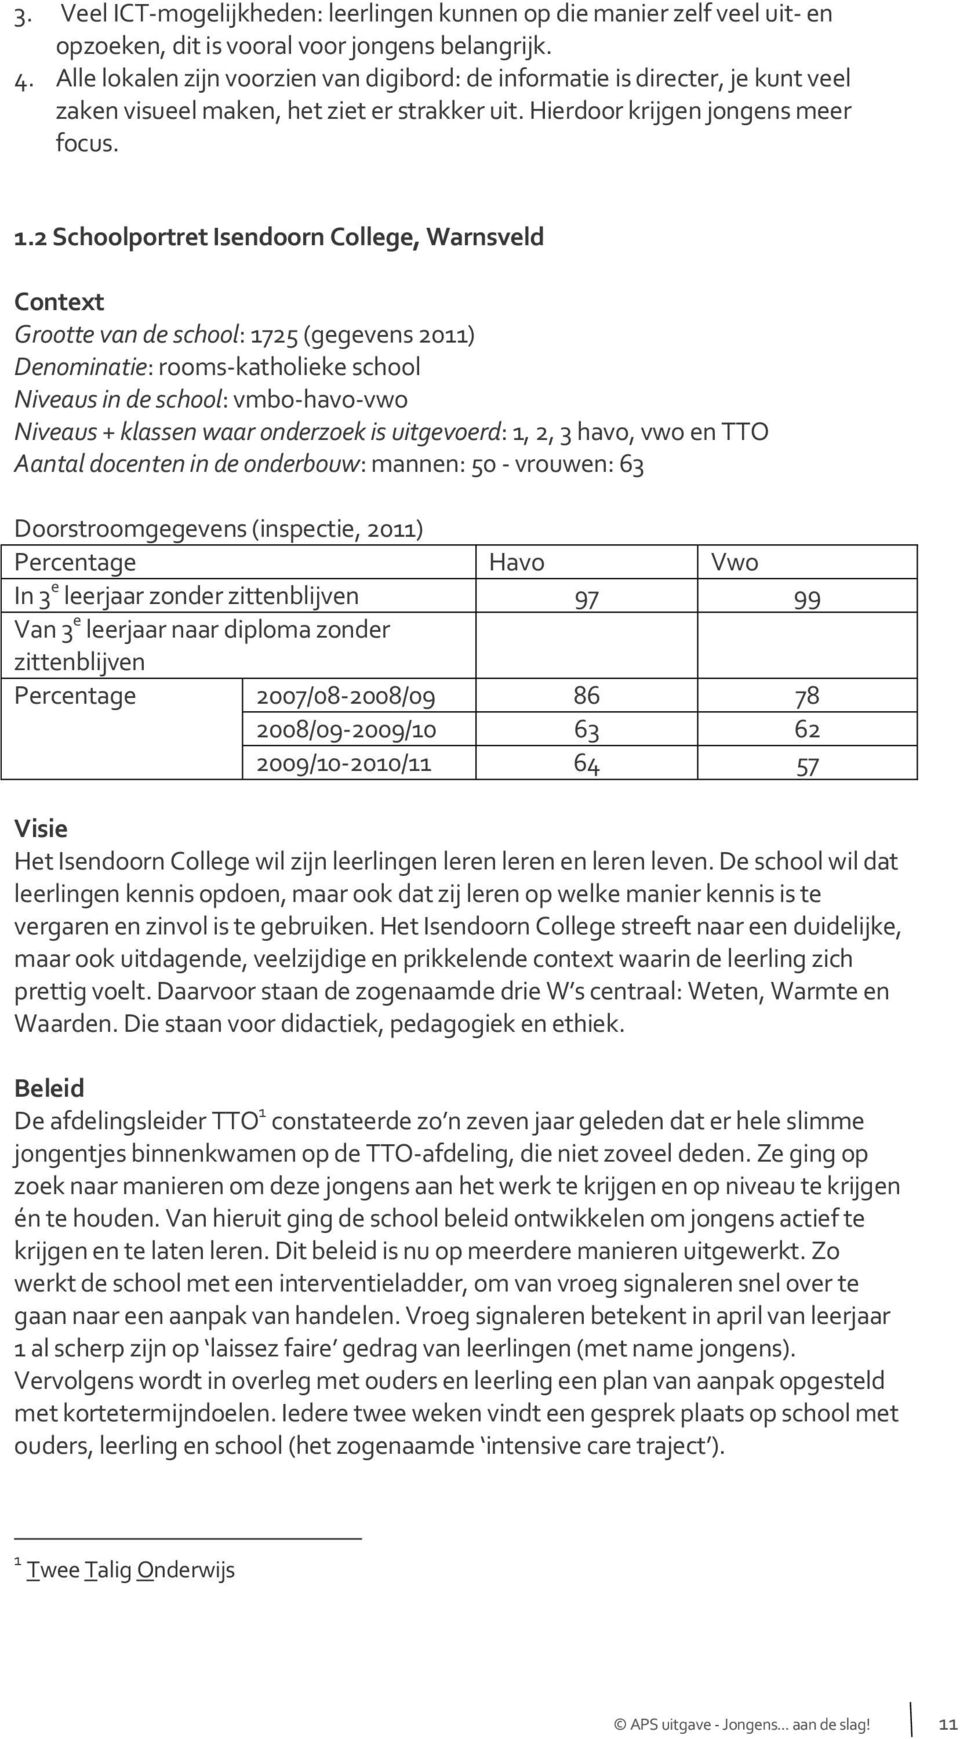 2 Schoolportret Isendoorn College, Warnsveld Context Grootte van de school: 1725 (gegevens 2011) Denominatie: rooms-katholieke school Niveaus in de school: vmbo-havo-vwo Niveaus + klassen waar